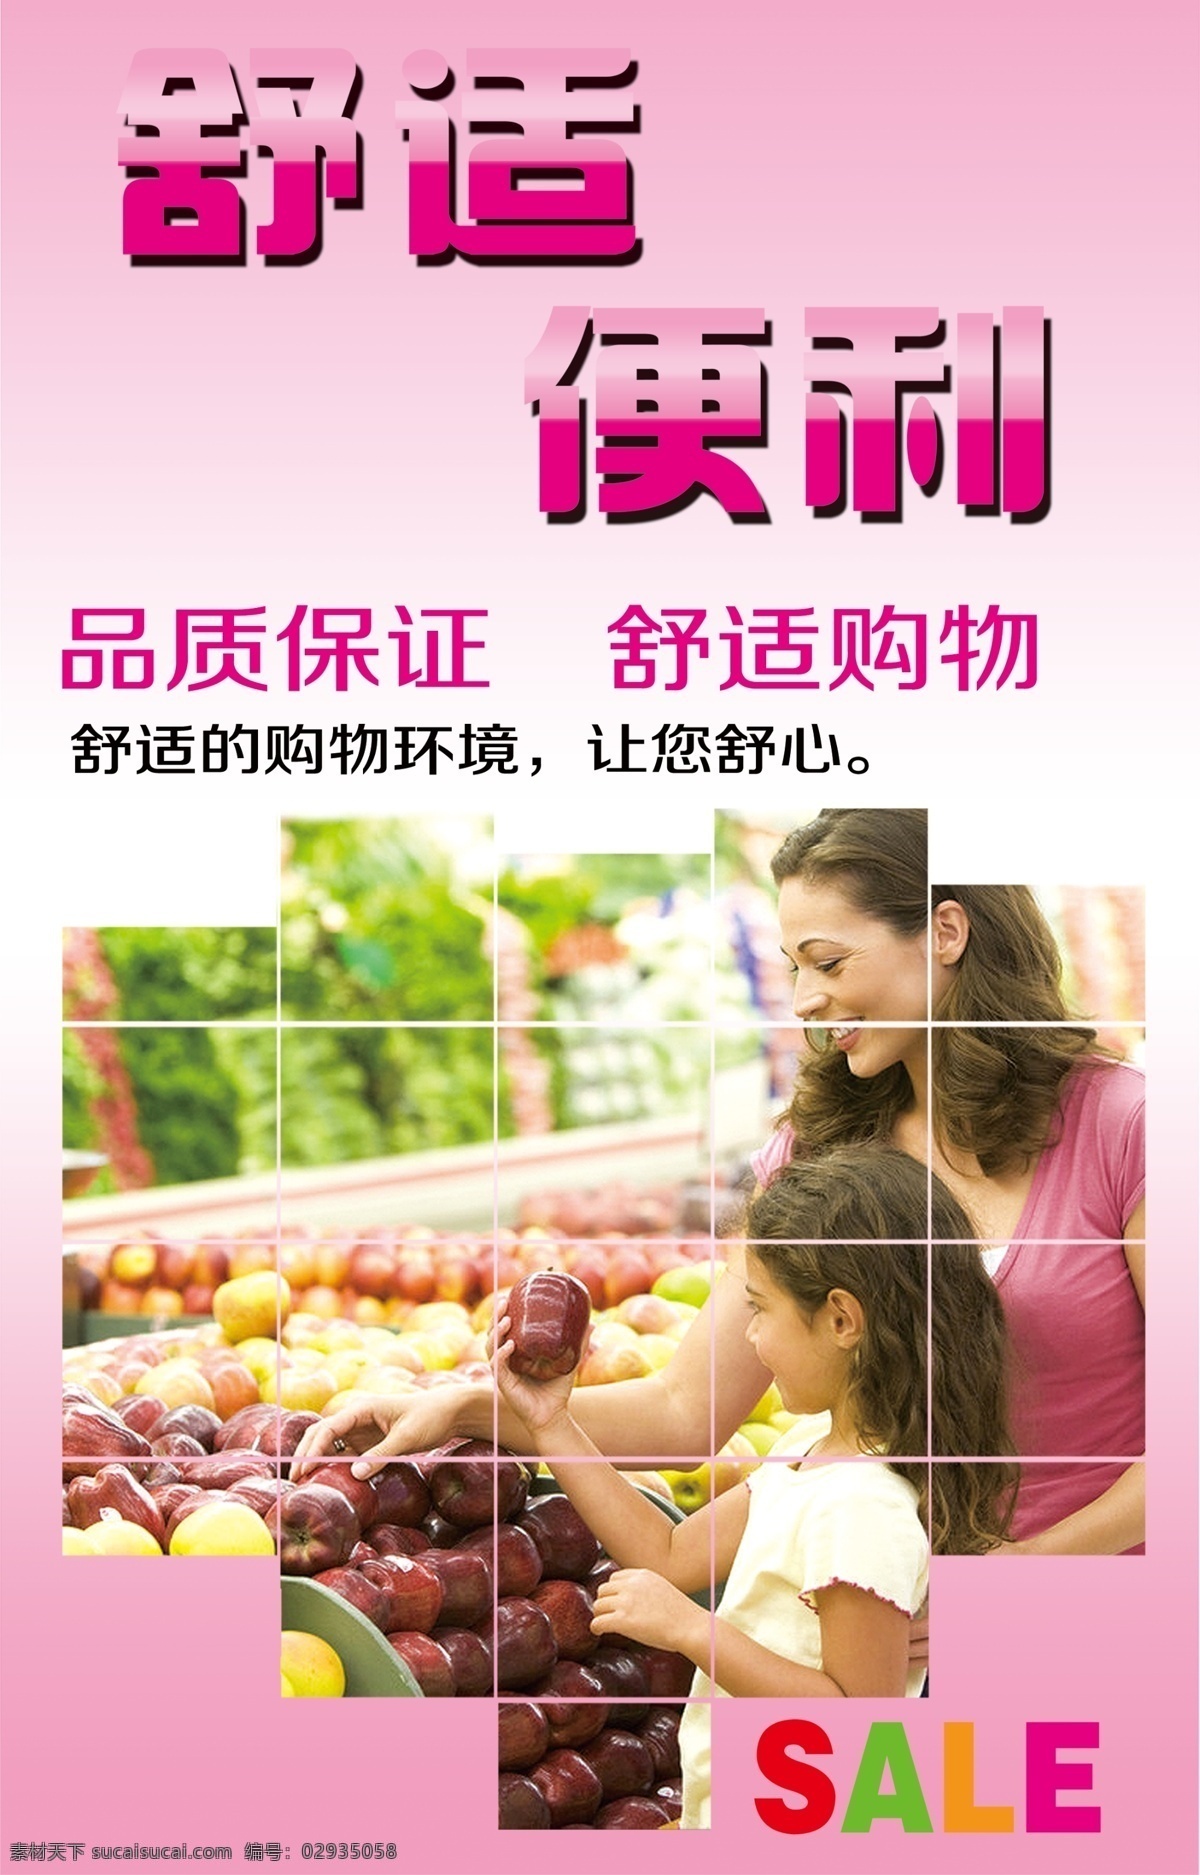 超市形象 舒适 便利 粉色底板 水果 超市购物 分层